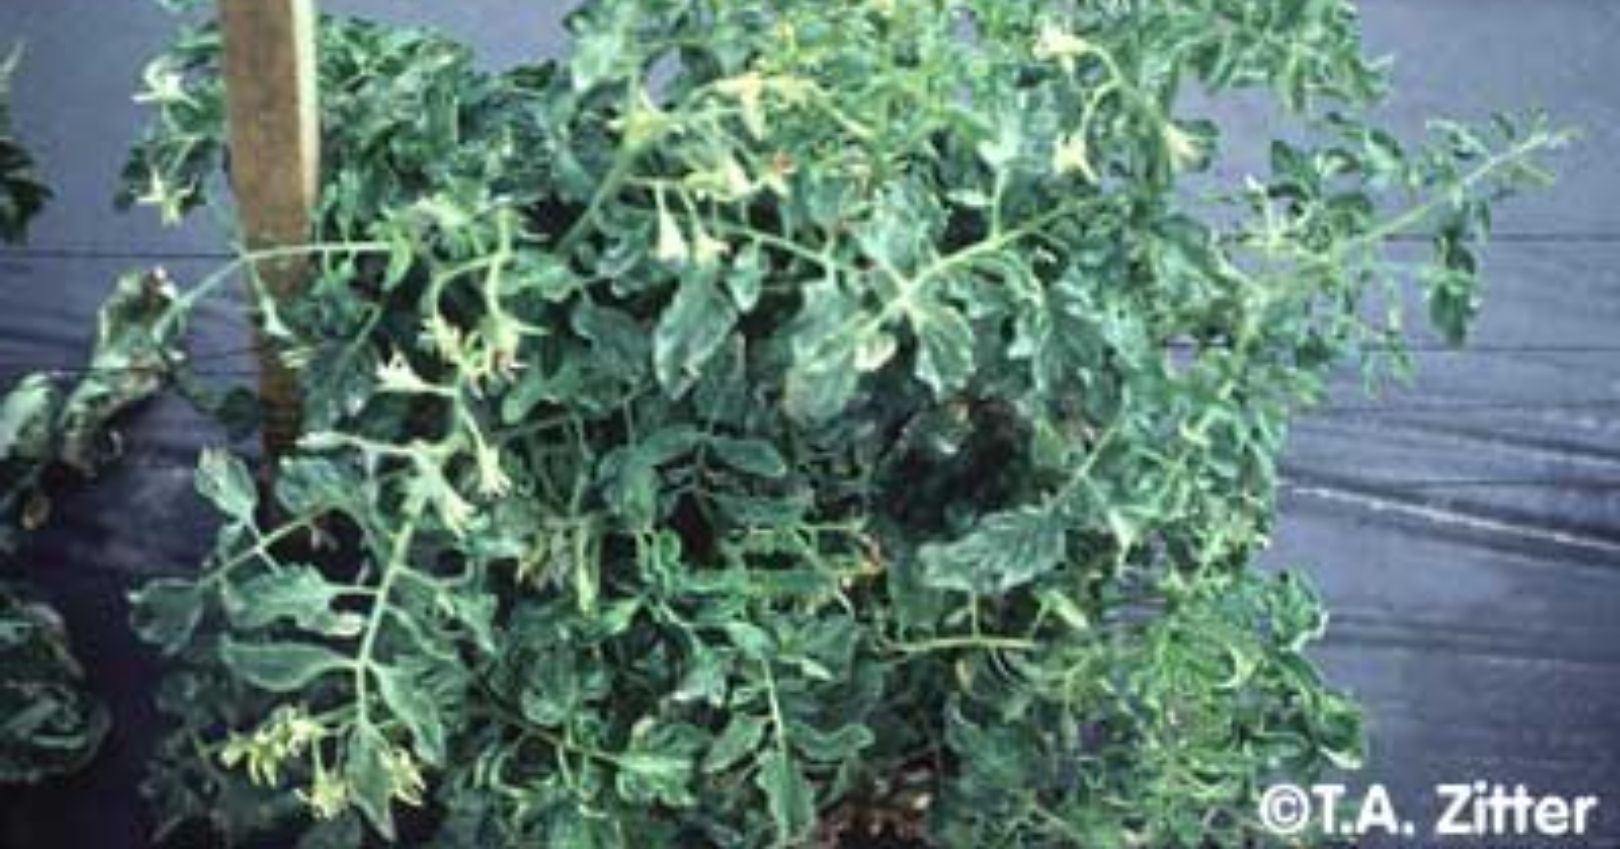 Symptoms of Tobacco Etch Virus in Tomato Foliage